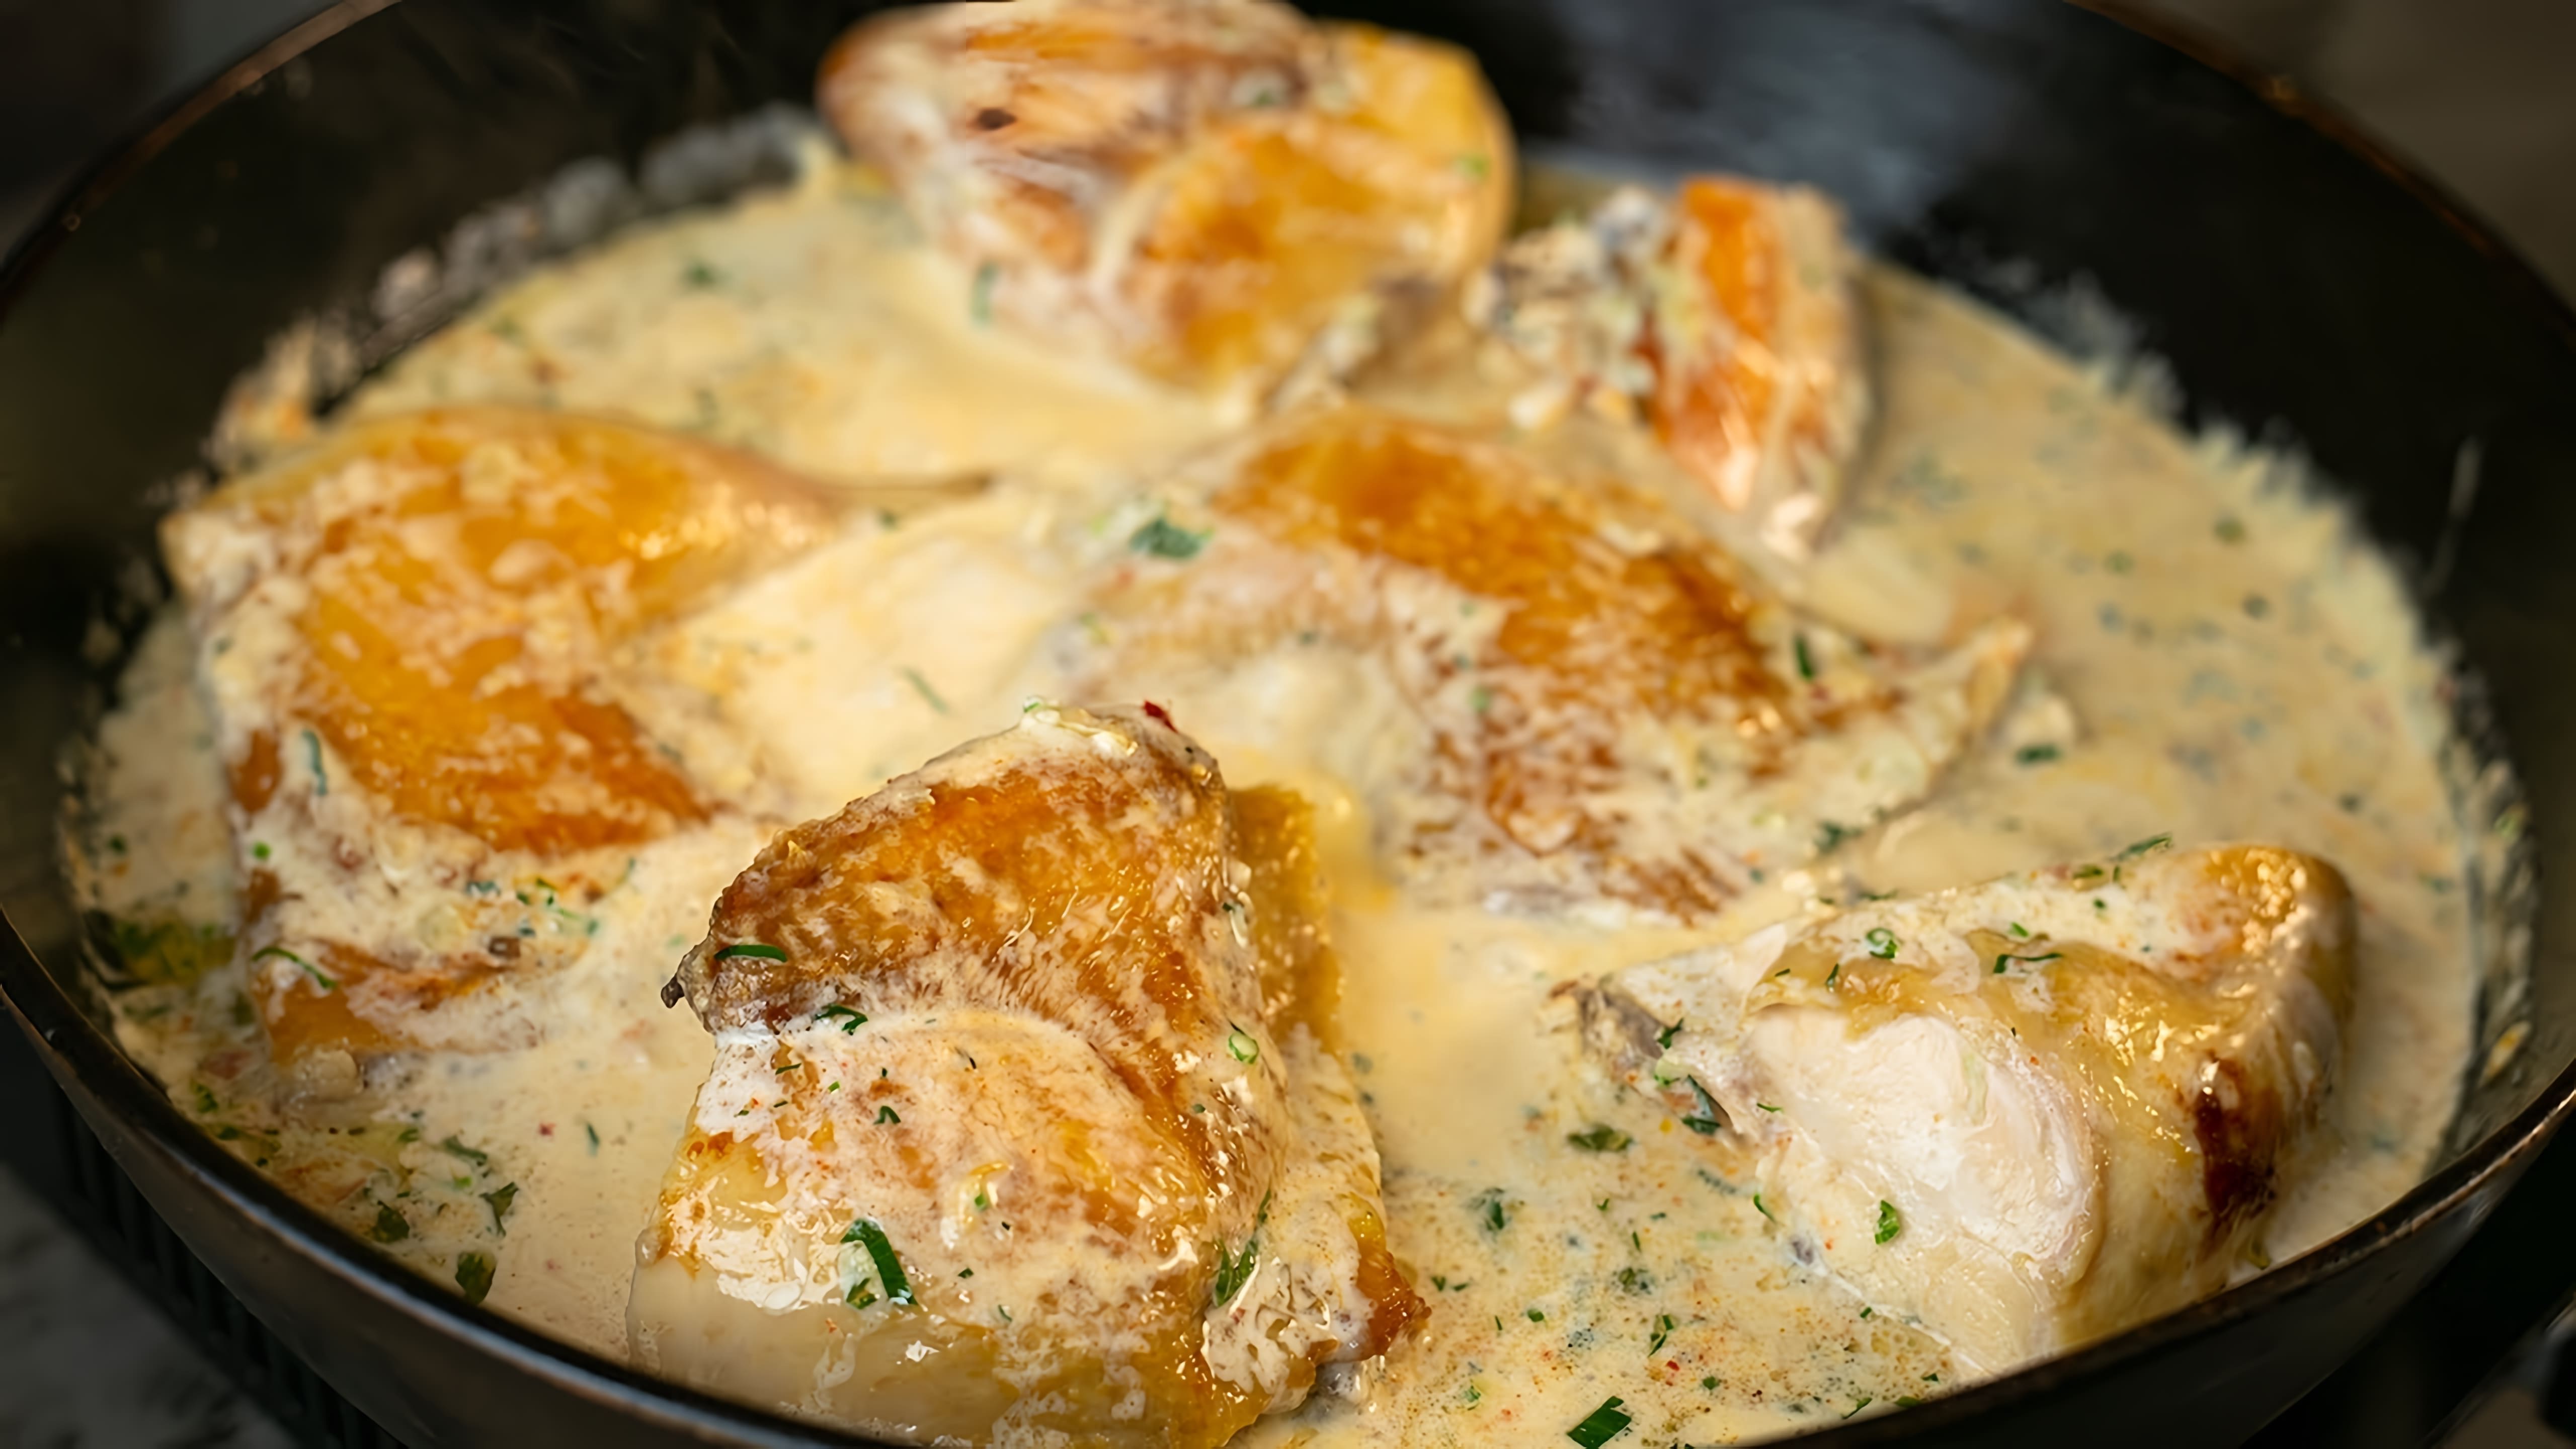 Видео как приготовить шкмерули, популярное грузинское блюдо из курицы, приготовленное в сливочном соусе